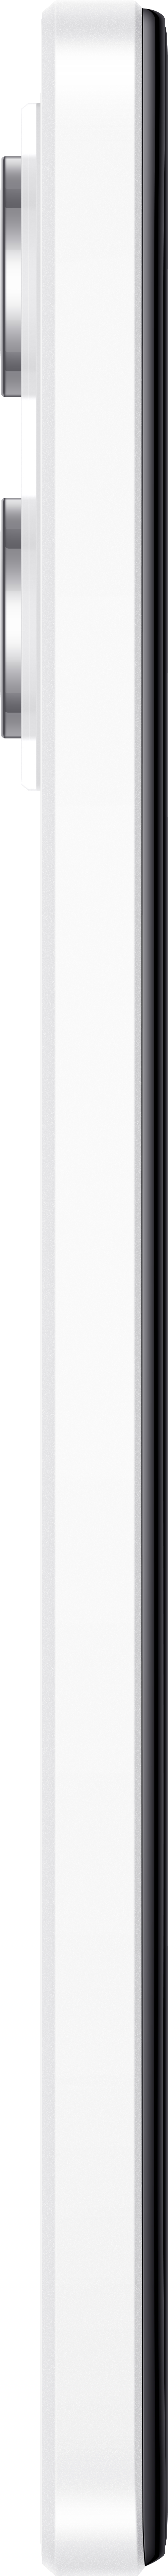 XIAOMI Redmi Note Dual Polar SIM White GB 5G 128 Pro 12